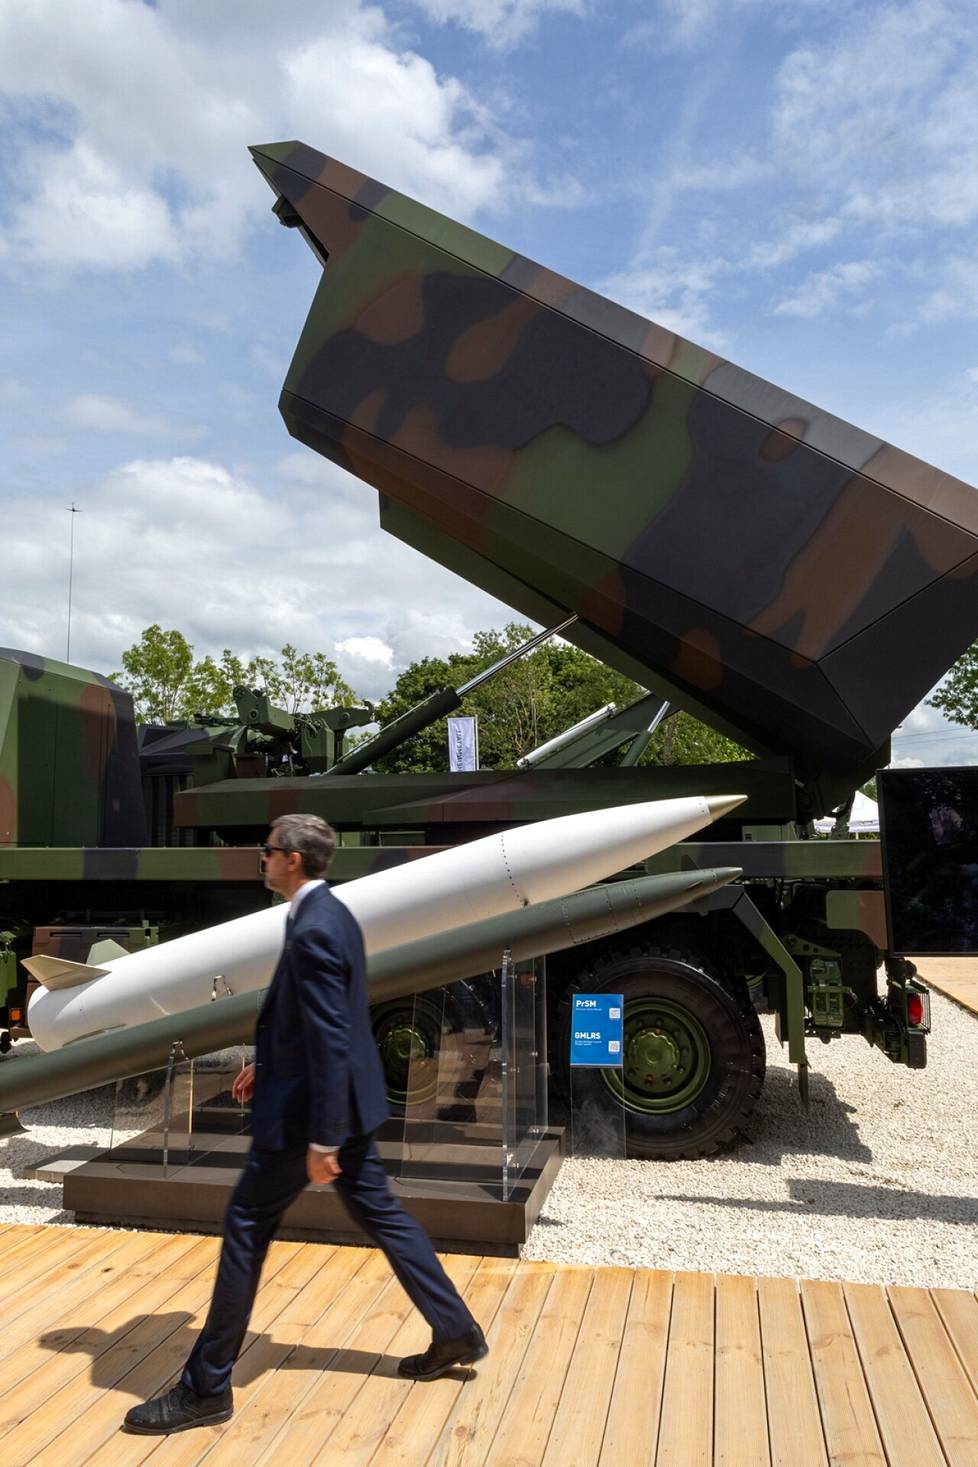 Yhdysvaltalaisen Lockheed Martinin ja saksalaisen Rheinmetallin yhteistyönä syntynyt Gmars-raketinheitin oli ensiesittelyssä Pariisissa.